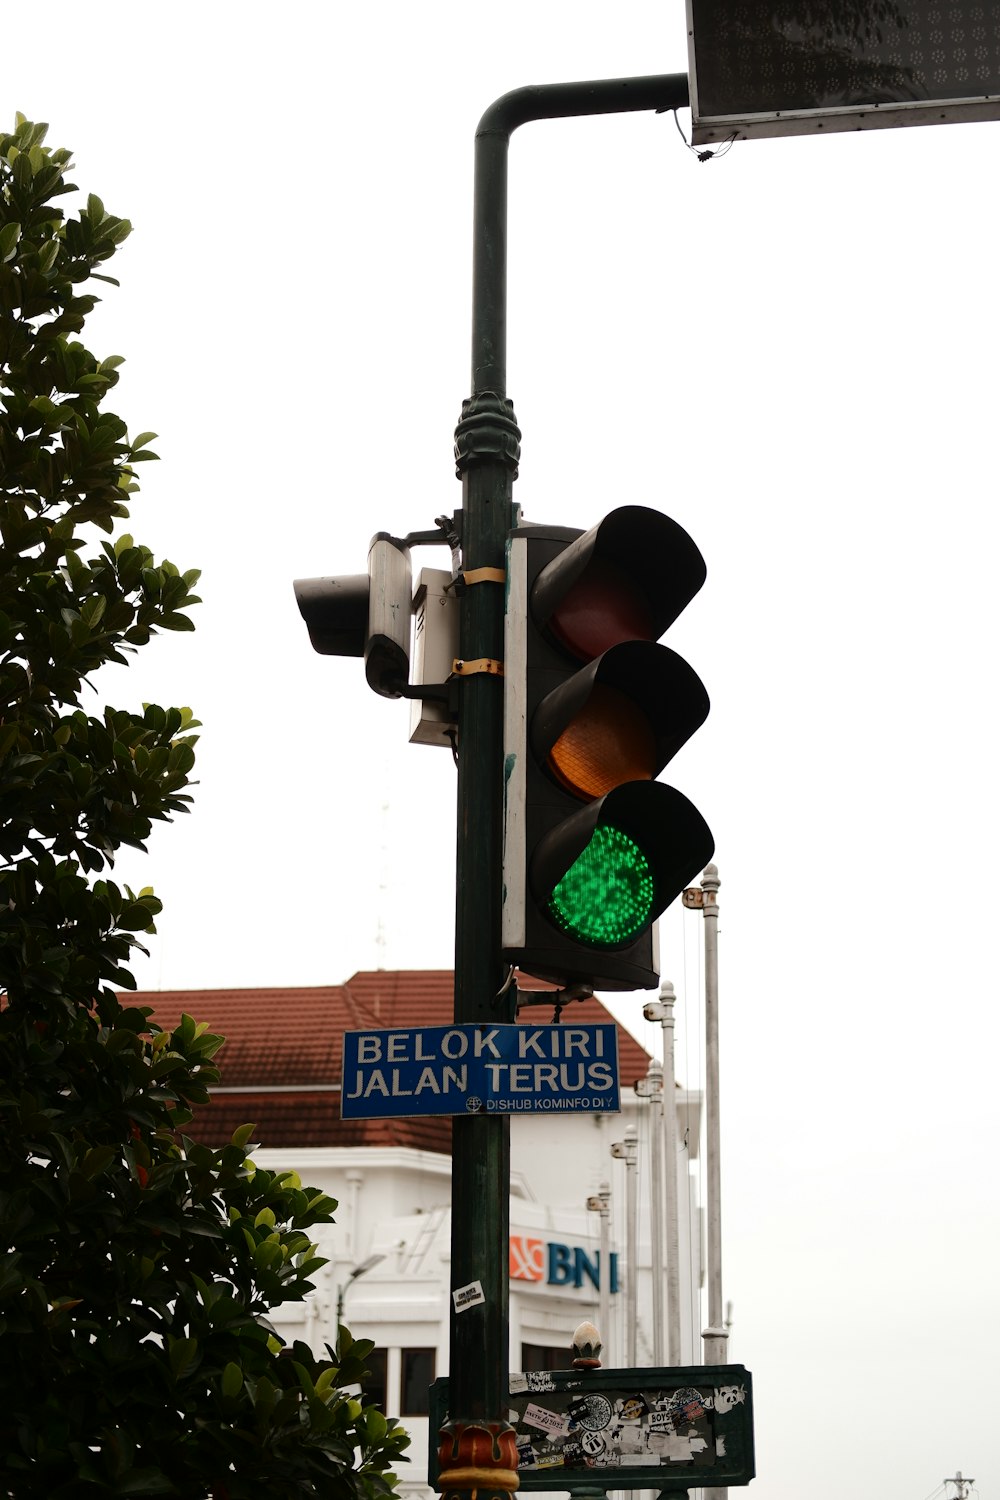 緑色の信号が点灯している信号機